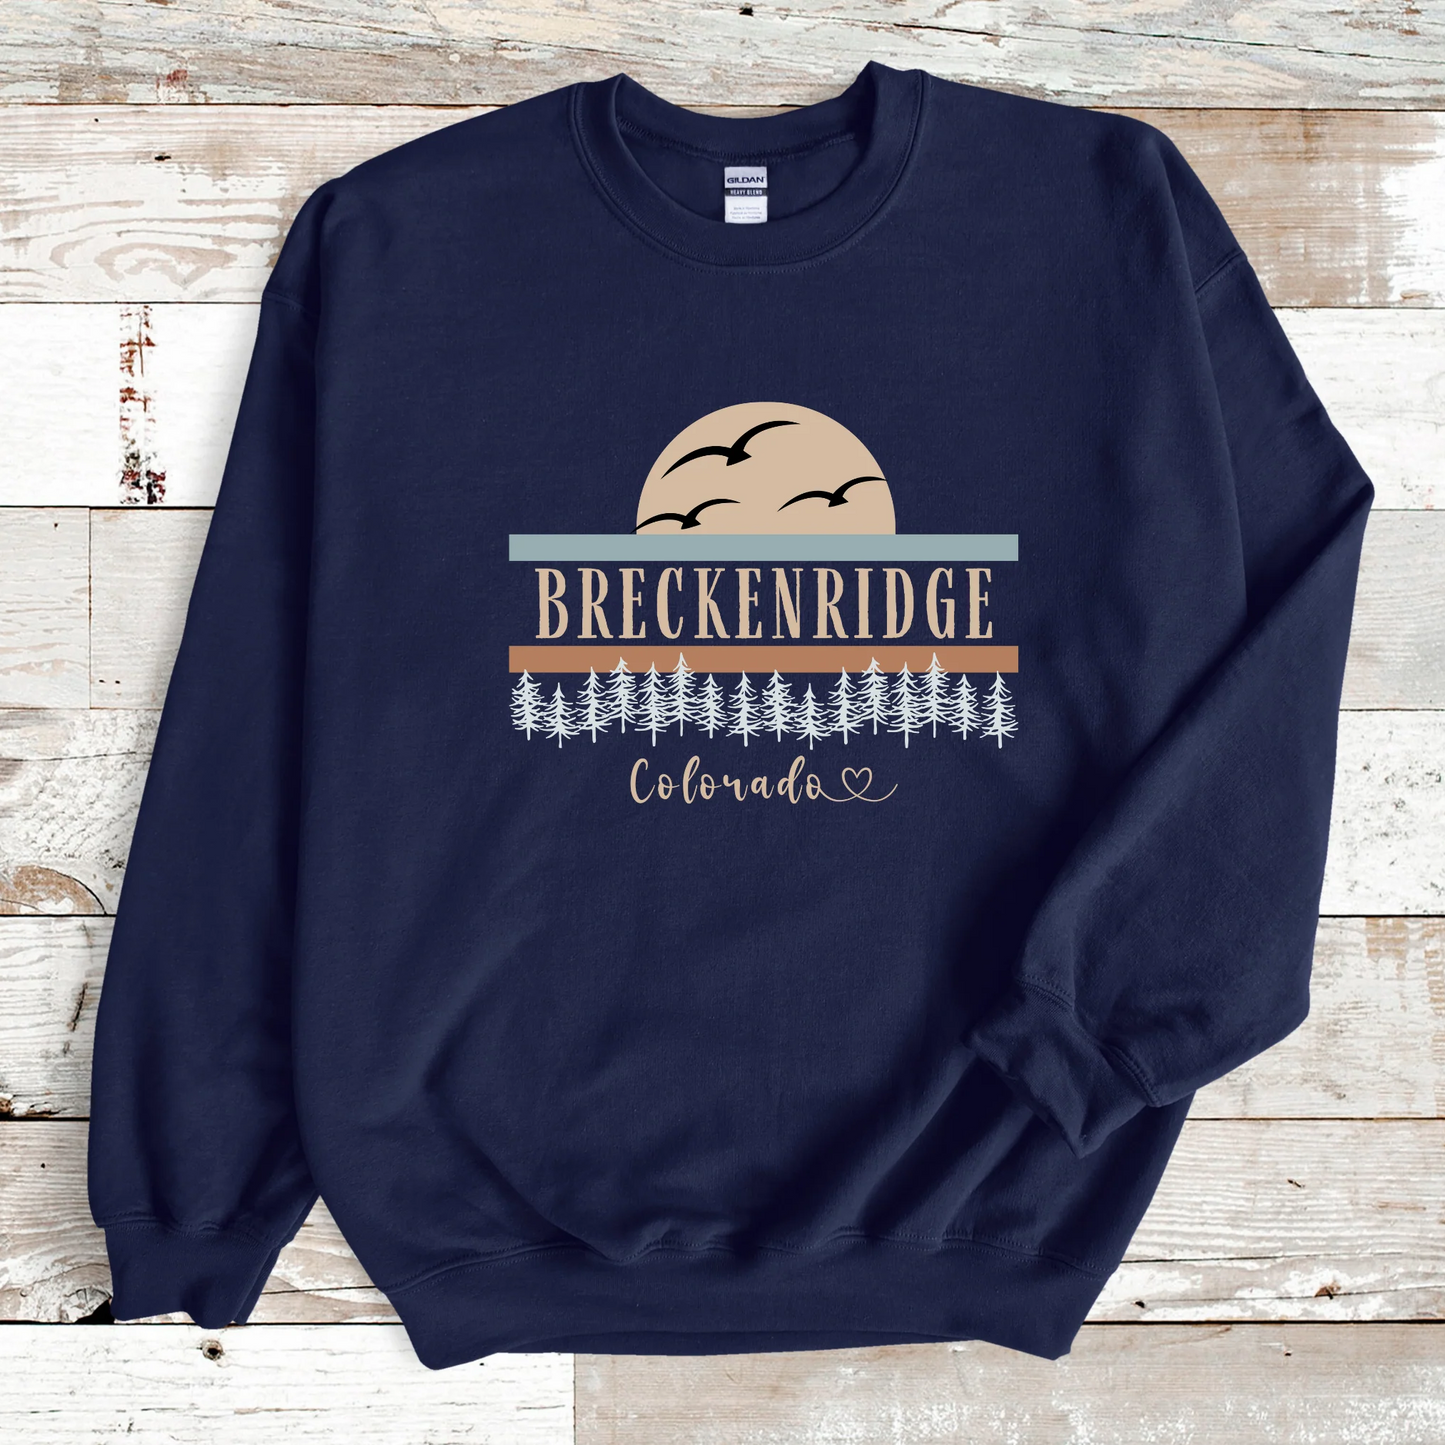 Breckenridge Colorado Sweatshirt, Unisex